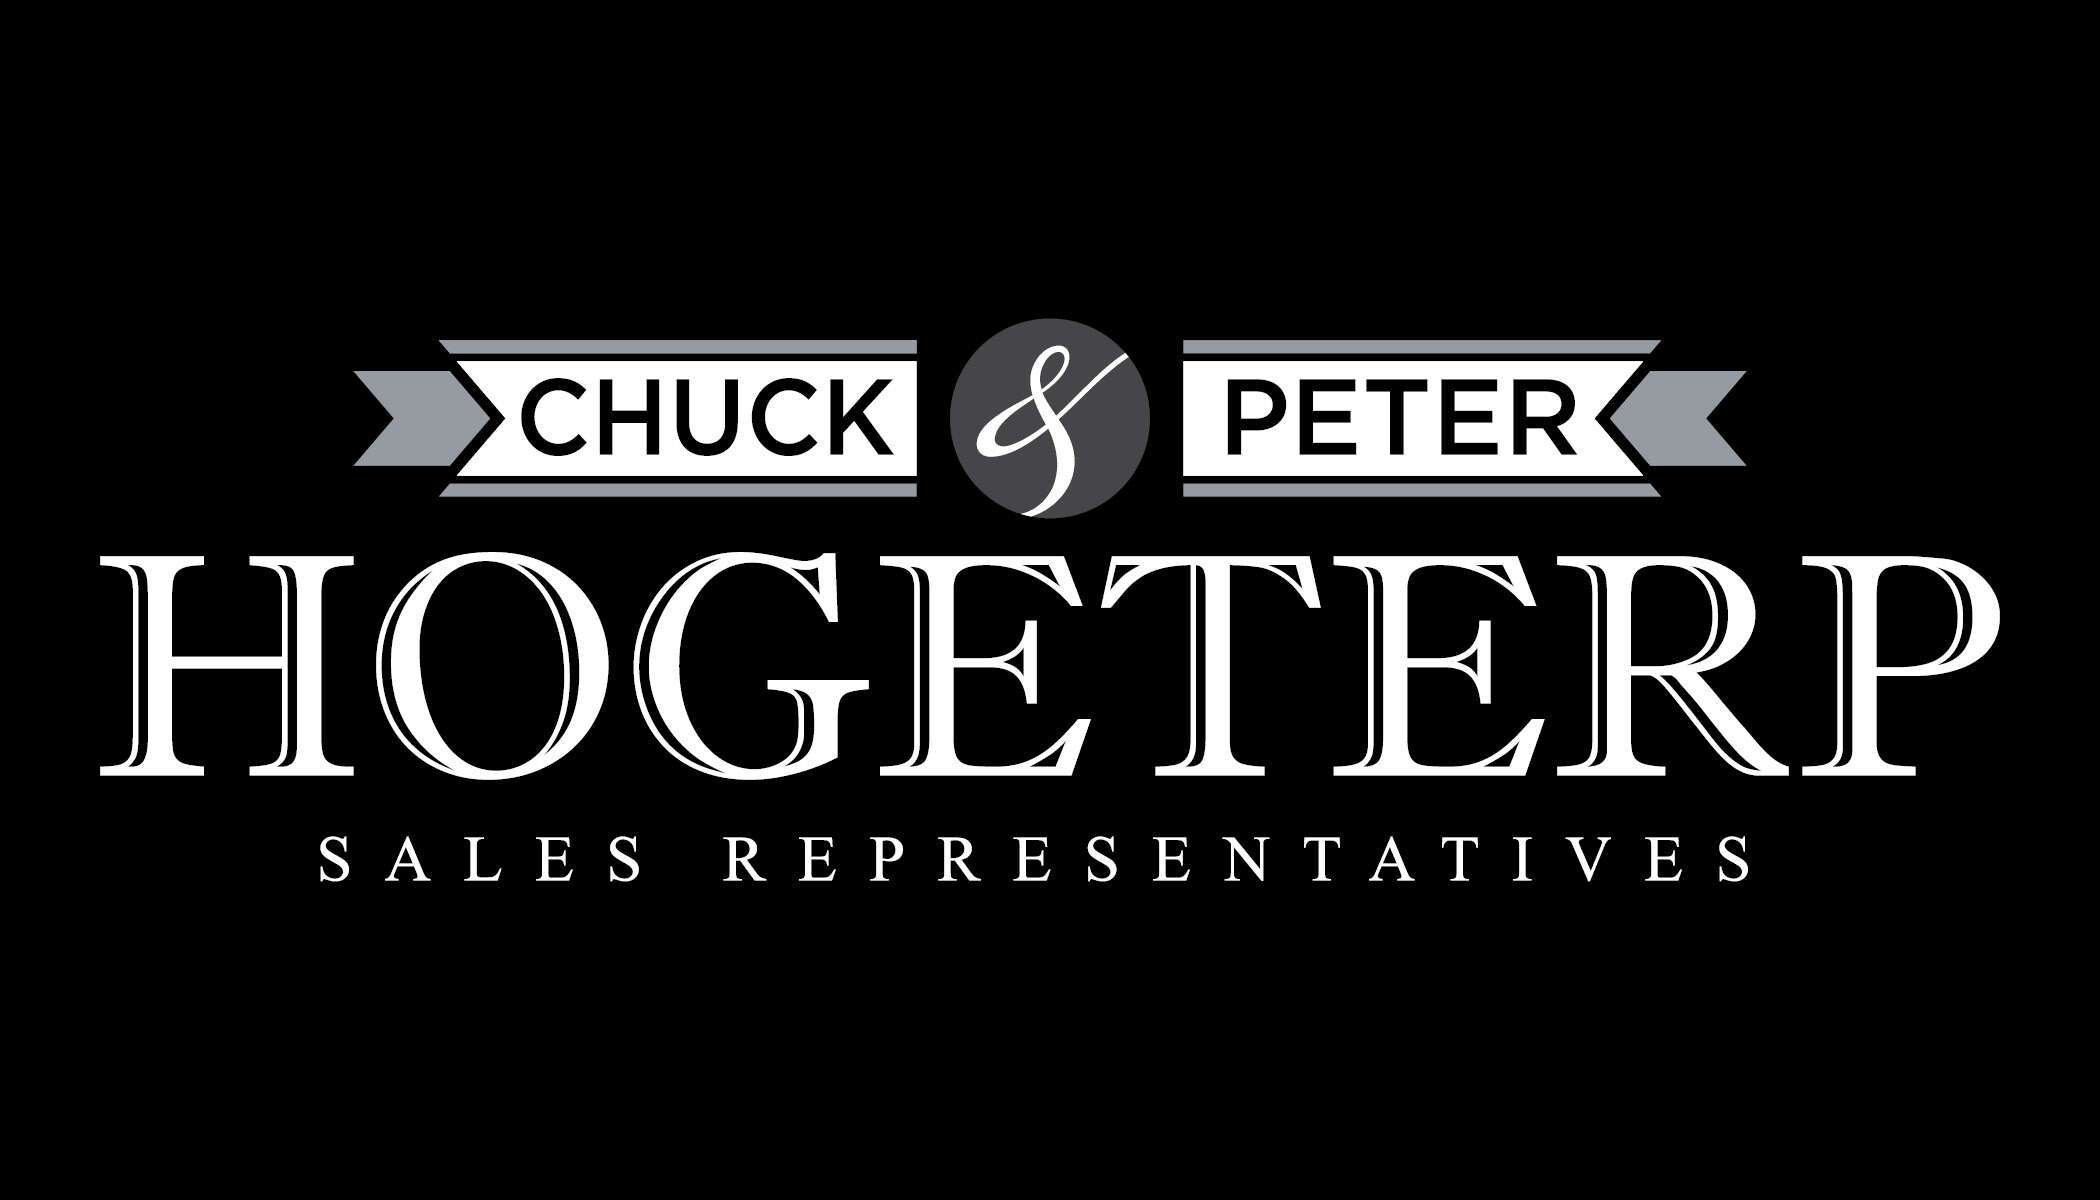 Chuck & Peter Hogeterp